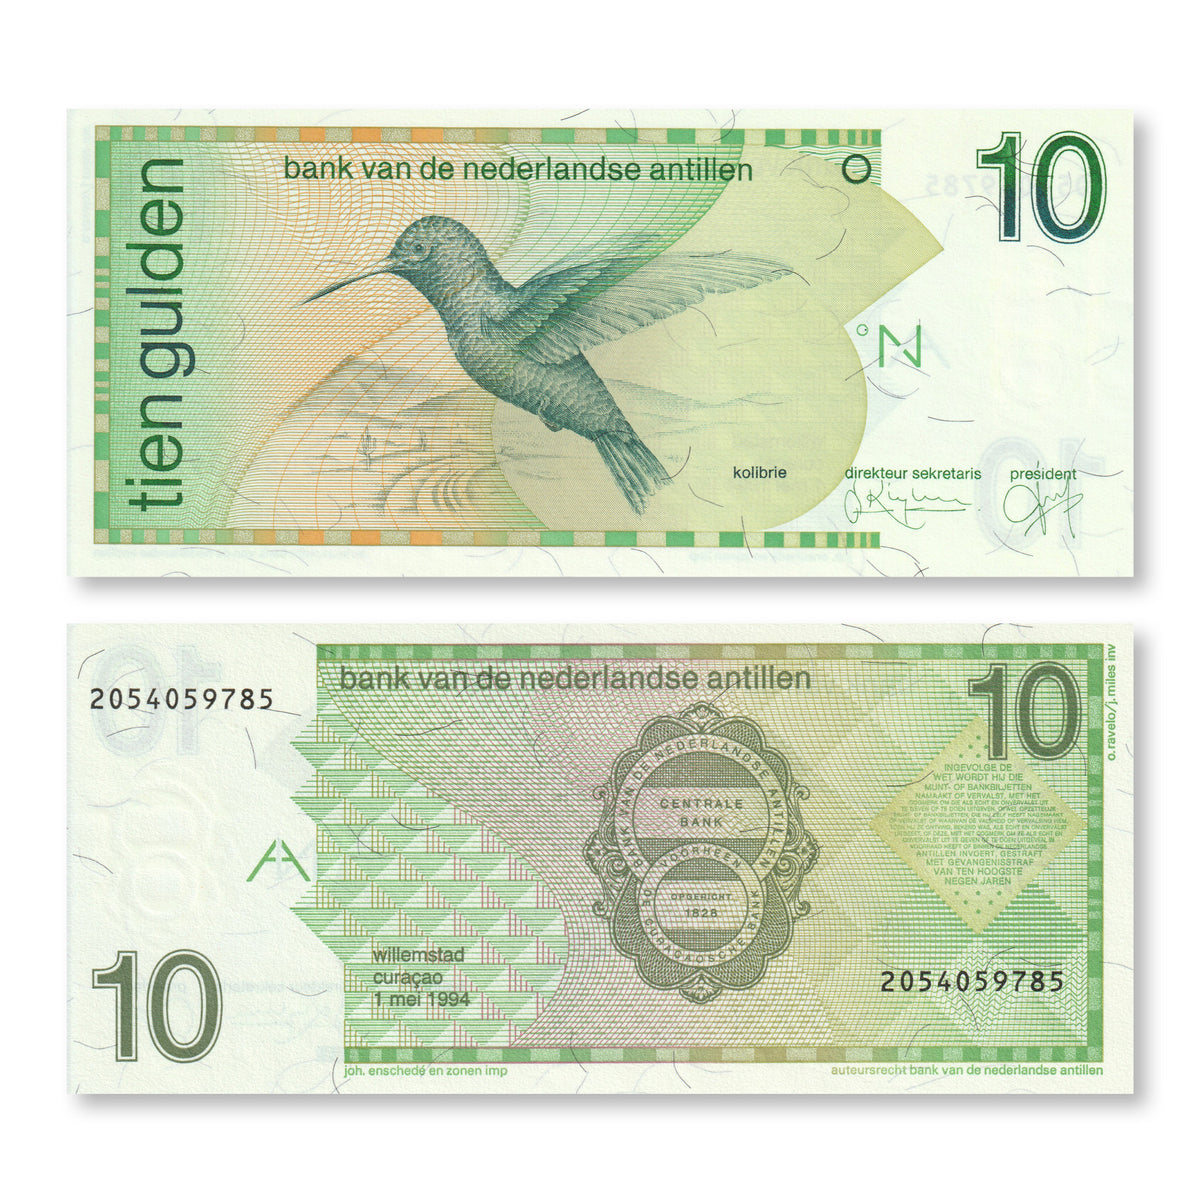 Netherlands Antilles 10 Gulden, 1994, B220b, P23b, UNC - Robert's World Money - World Banknotes